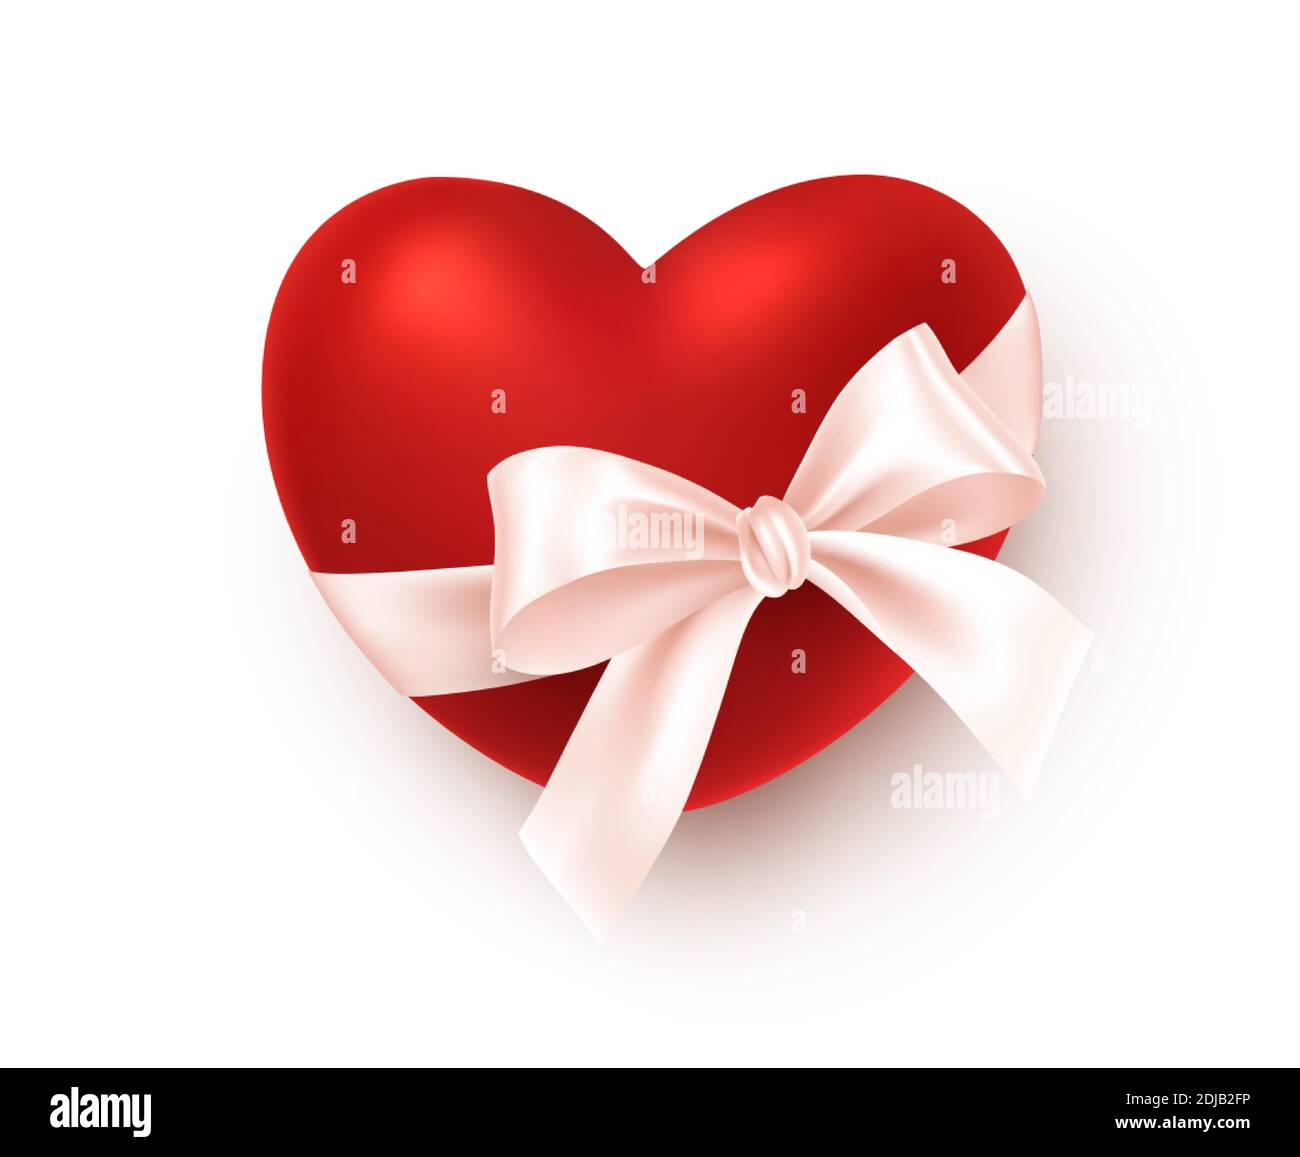 Cuore rosso realistico con archetto di seta bianco isolato su sfondo bianco. Elemento di design festivo per i saluti felici del giorno di San Valentino. Vettore Illustrazione Vettoriale